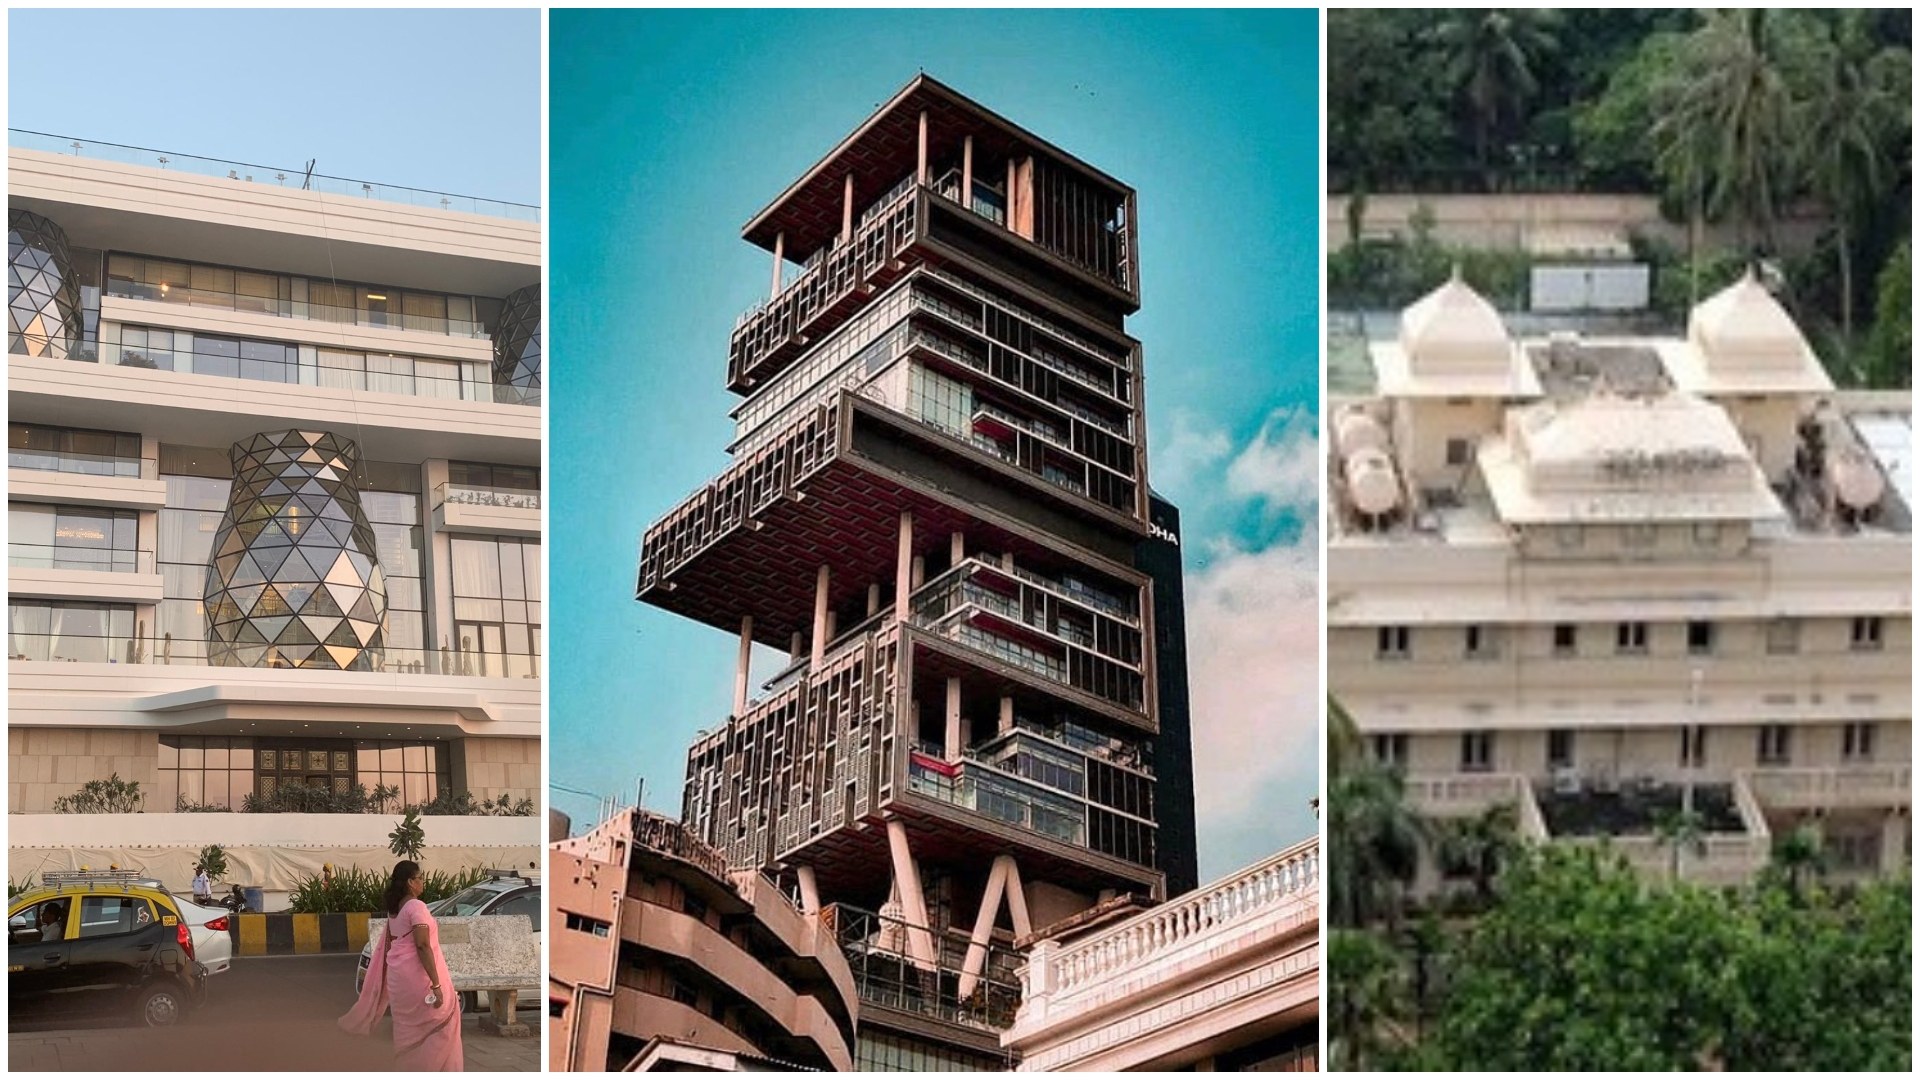 Amitabh Bachchan’s home, and Mukesh Ambani’s home | Wedifys